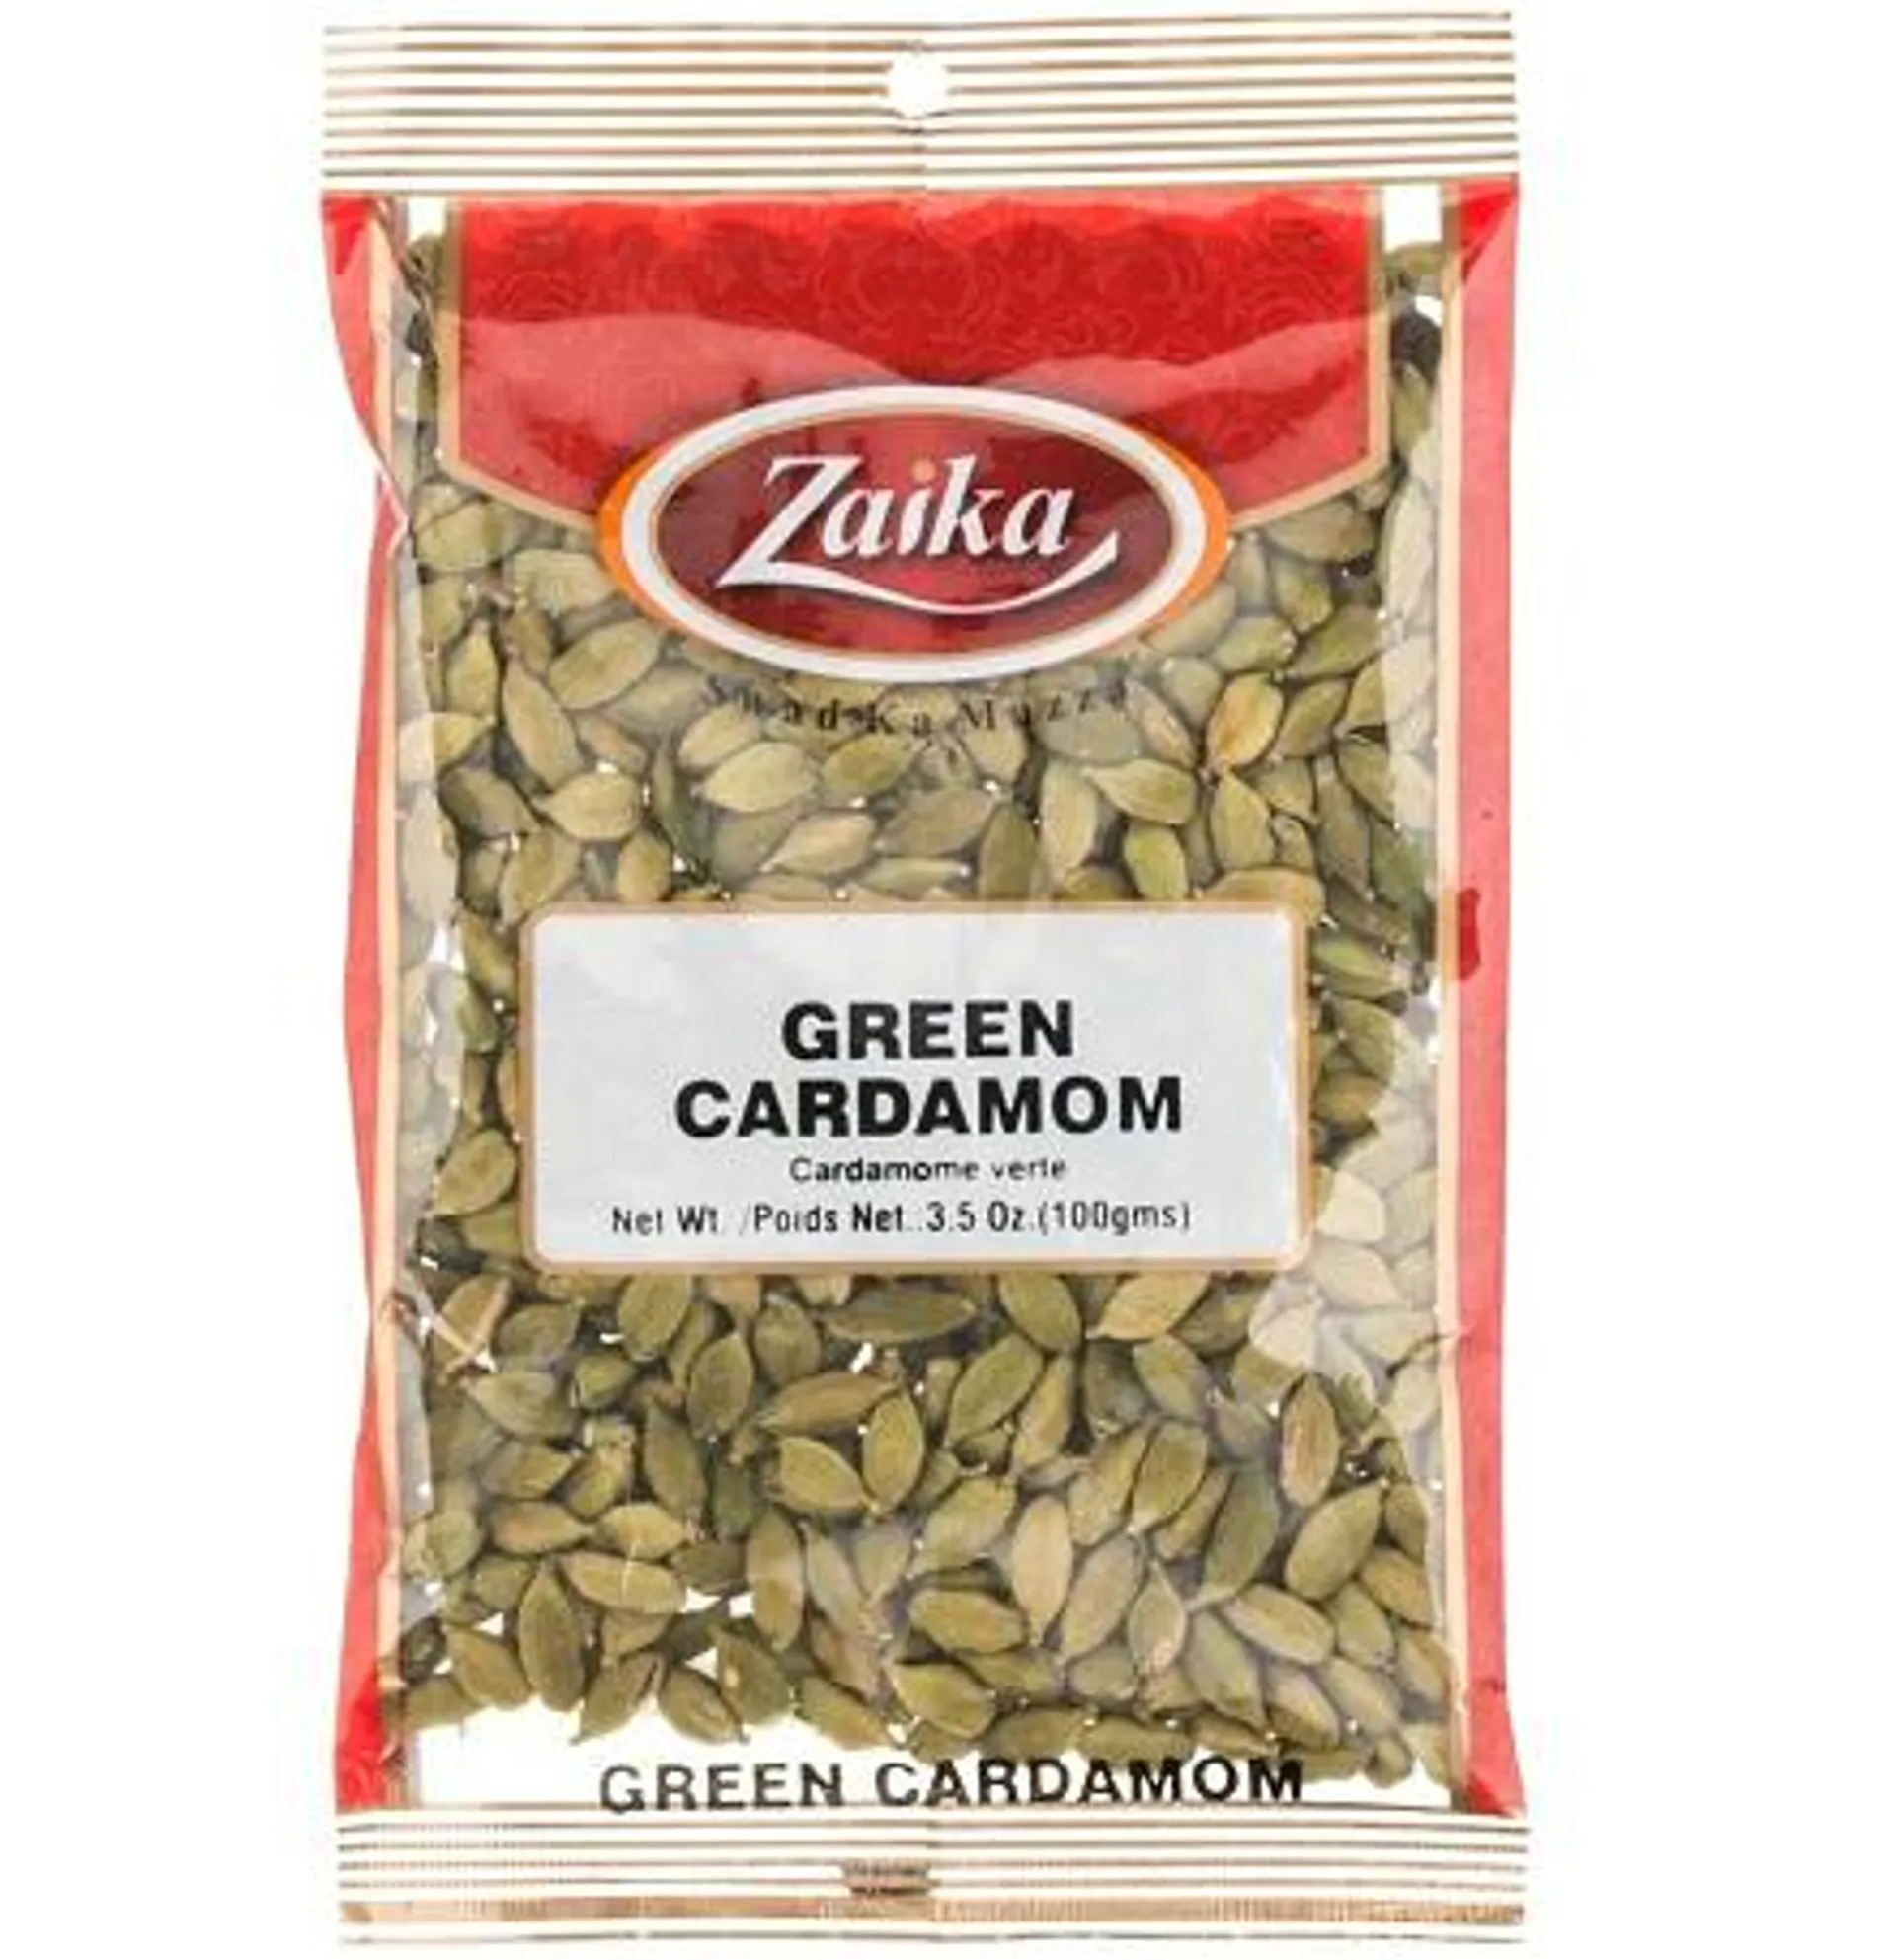 Zaika green cardamom - 100g